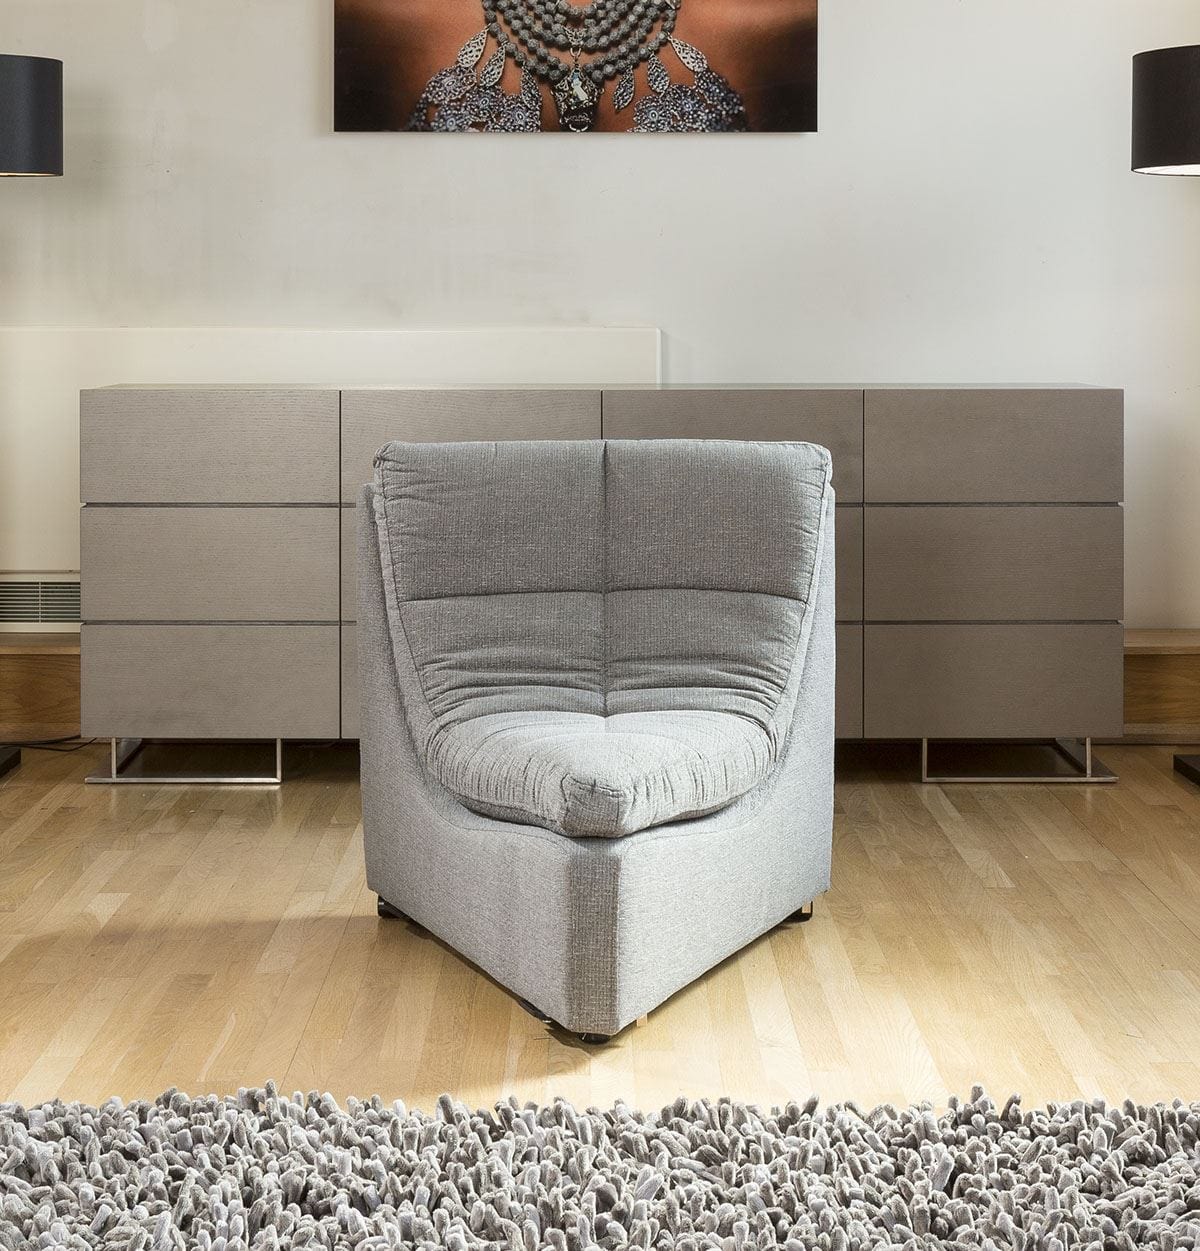 Quatropi Relax Premium Desginer Sofa Corner Piece 45 Degree Chair